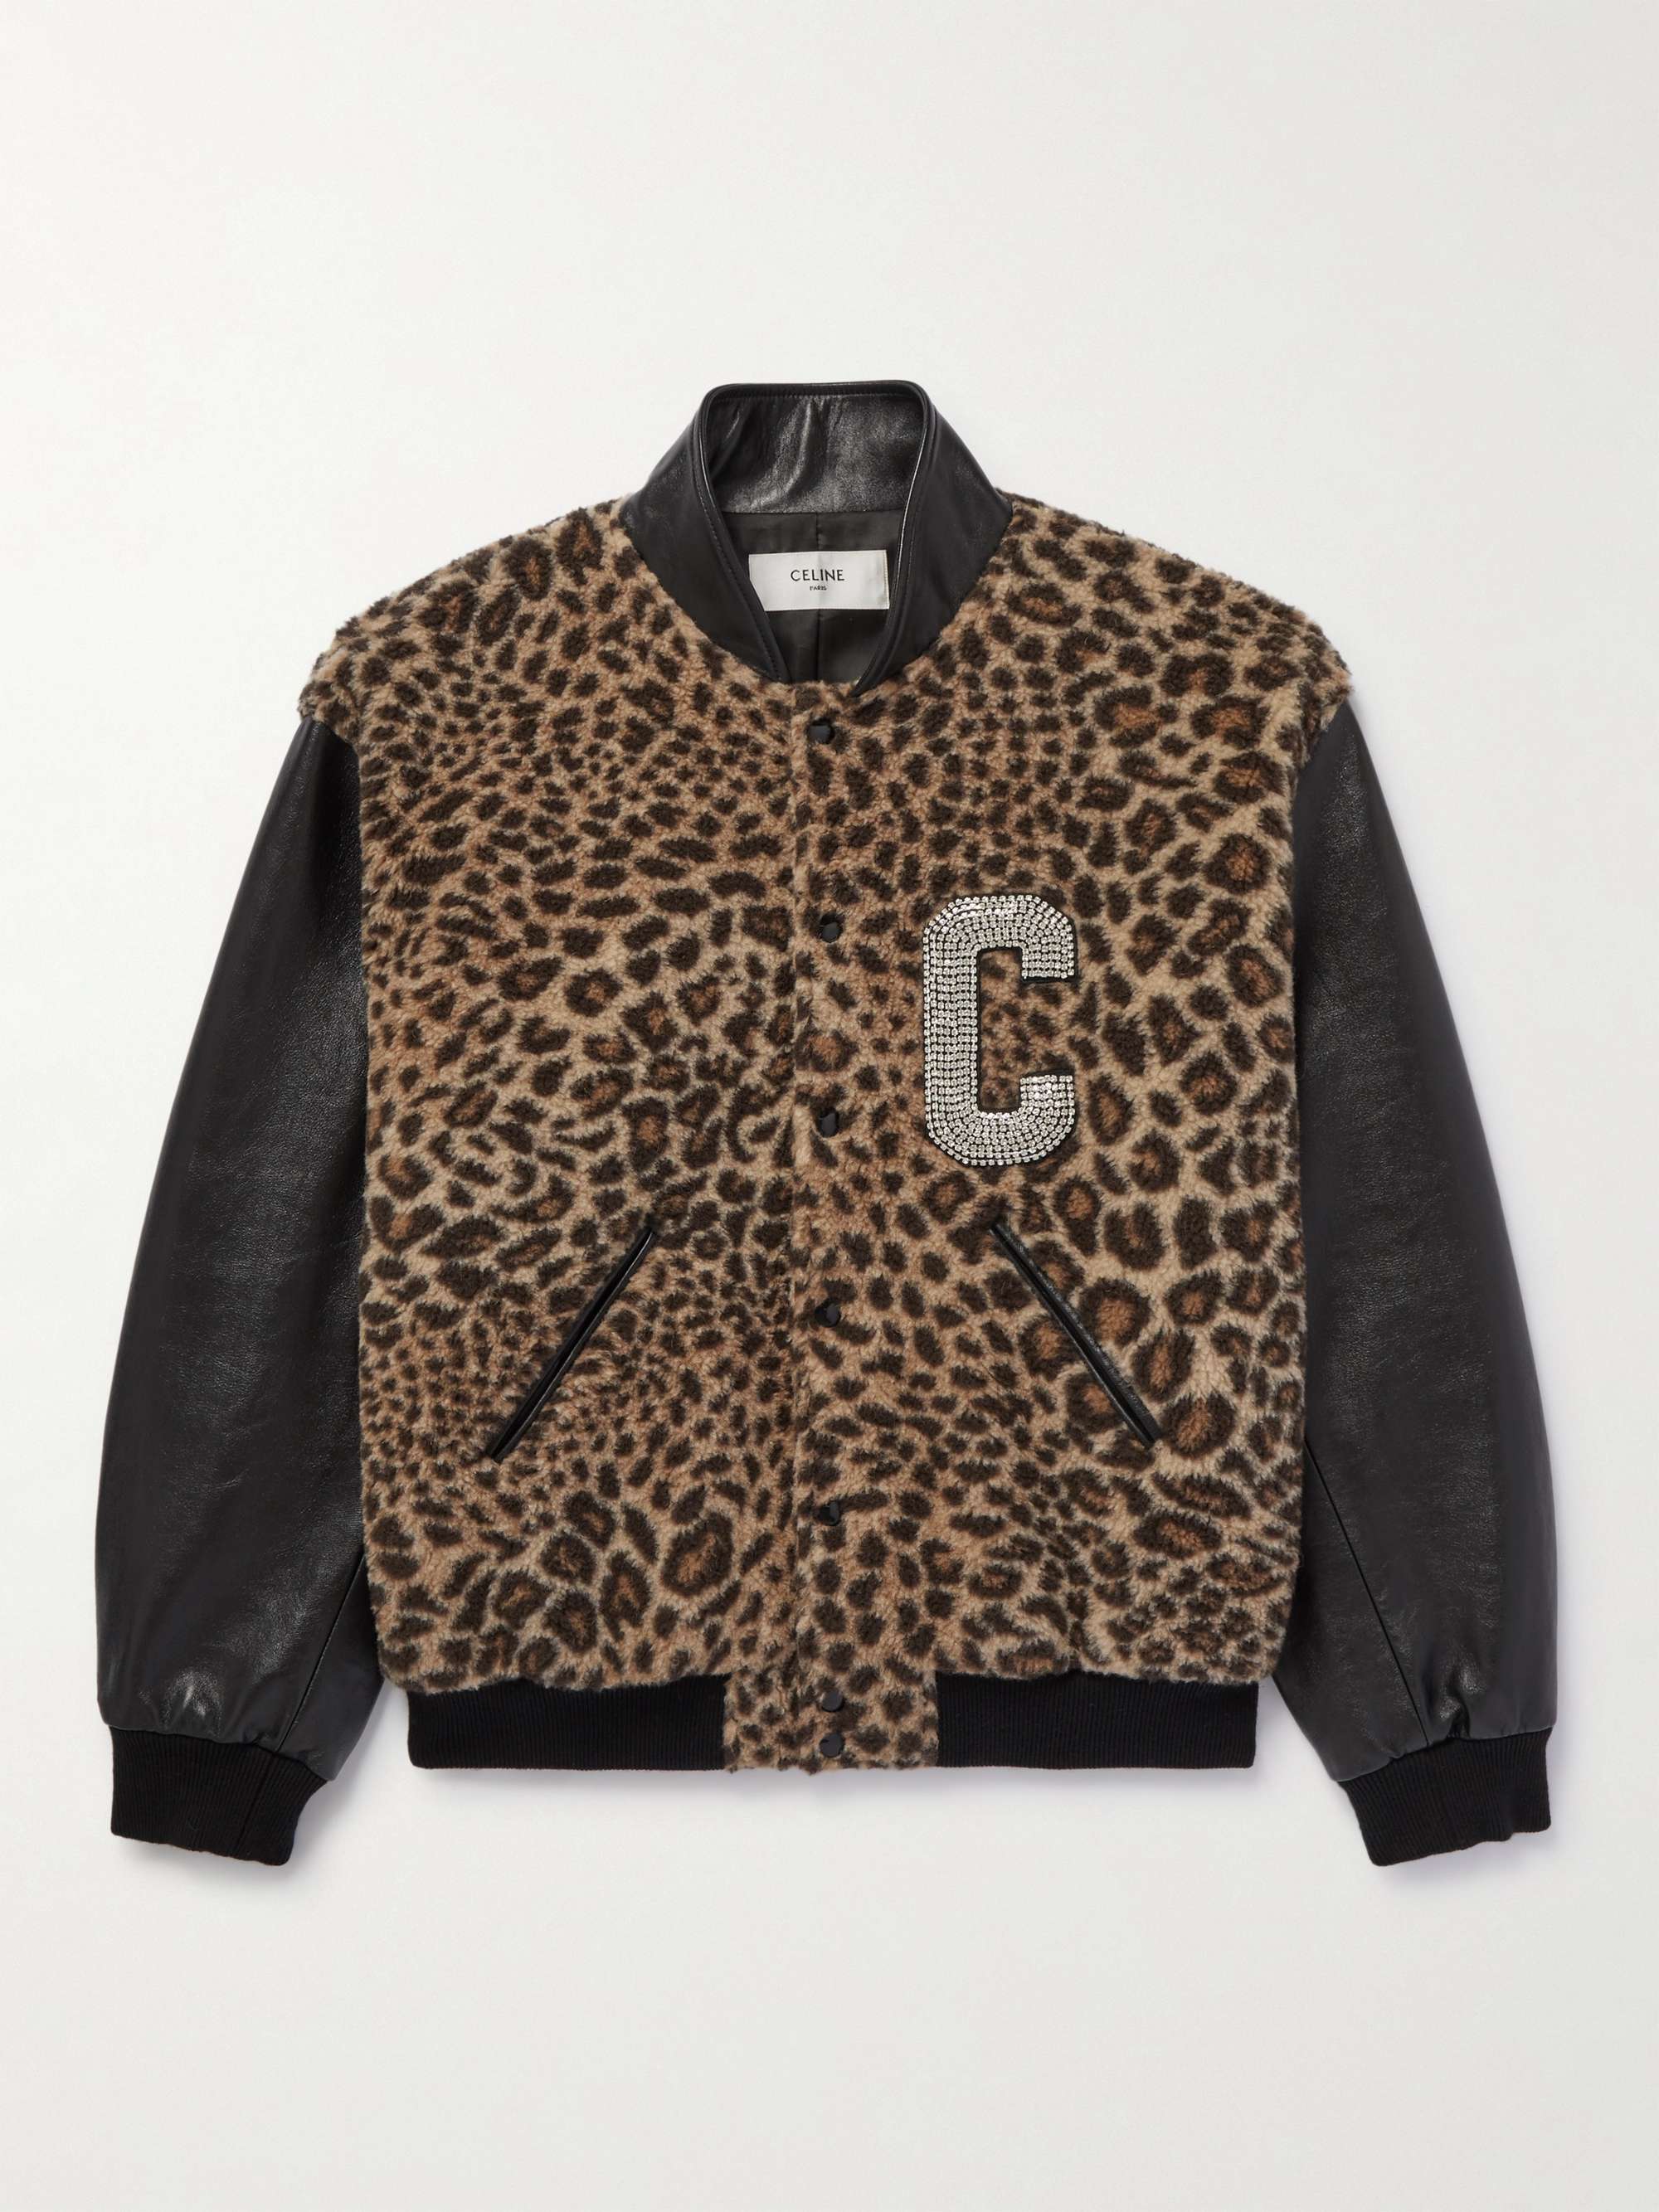 CELINE HOMME Crystal-Embellished Leopard-Print Camel Hair and Silk-Blend and Leather Bomber Jacket